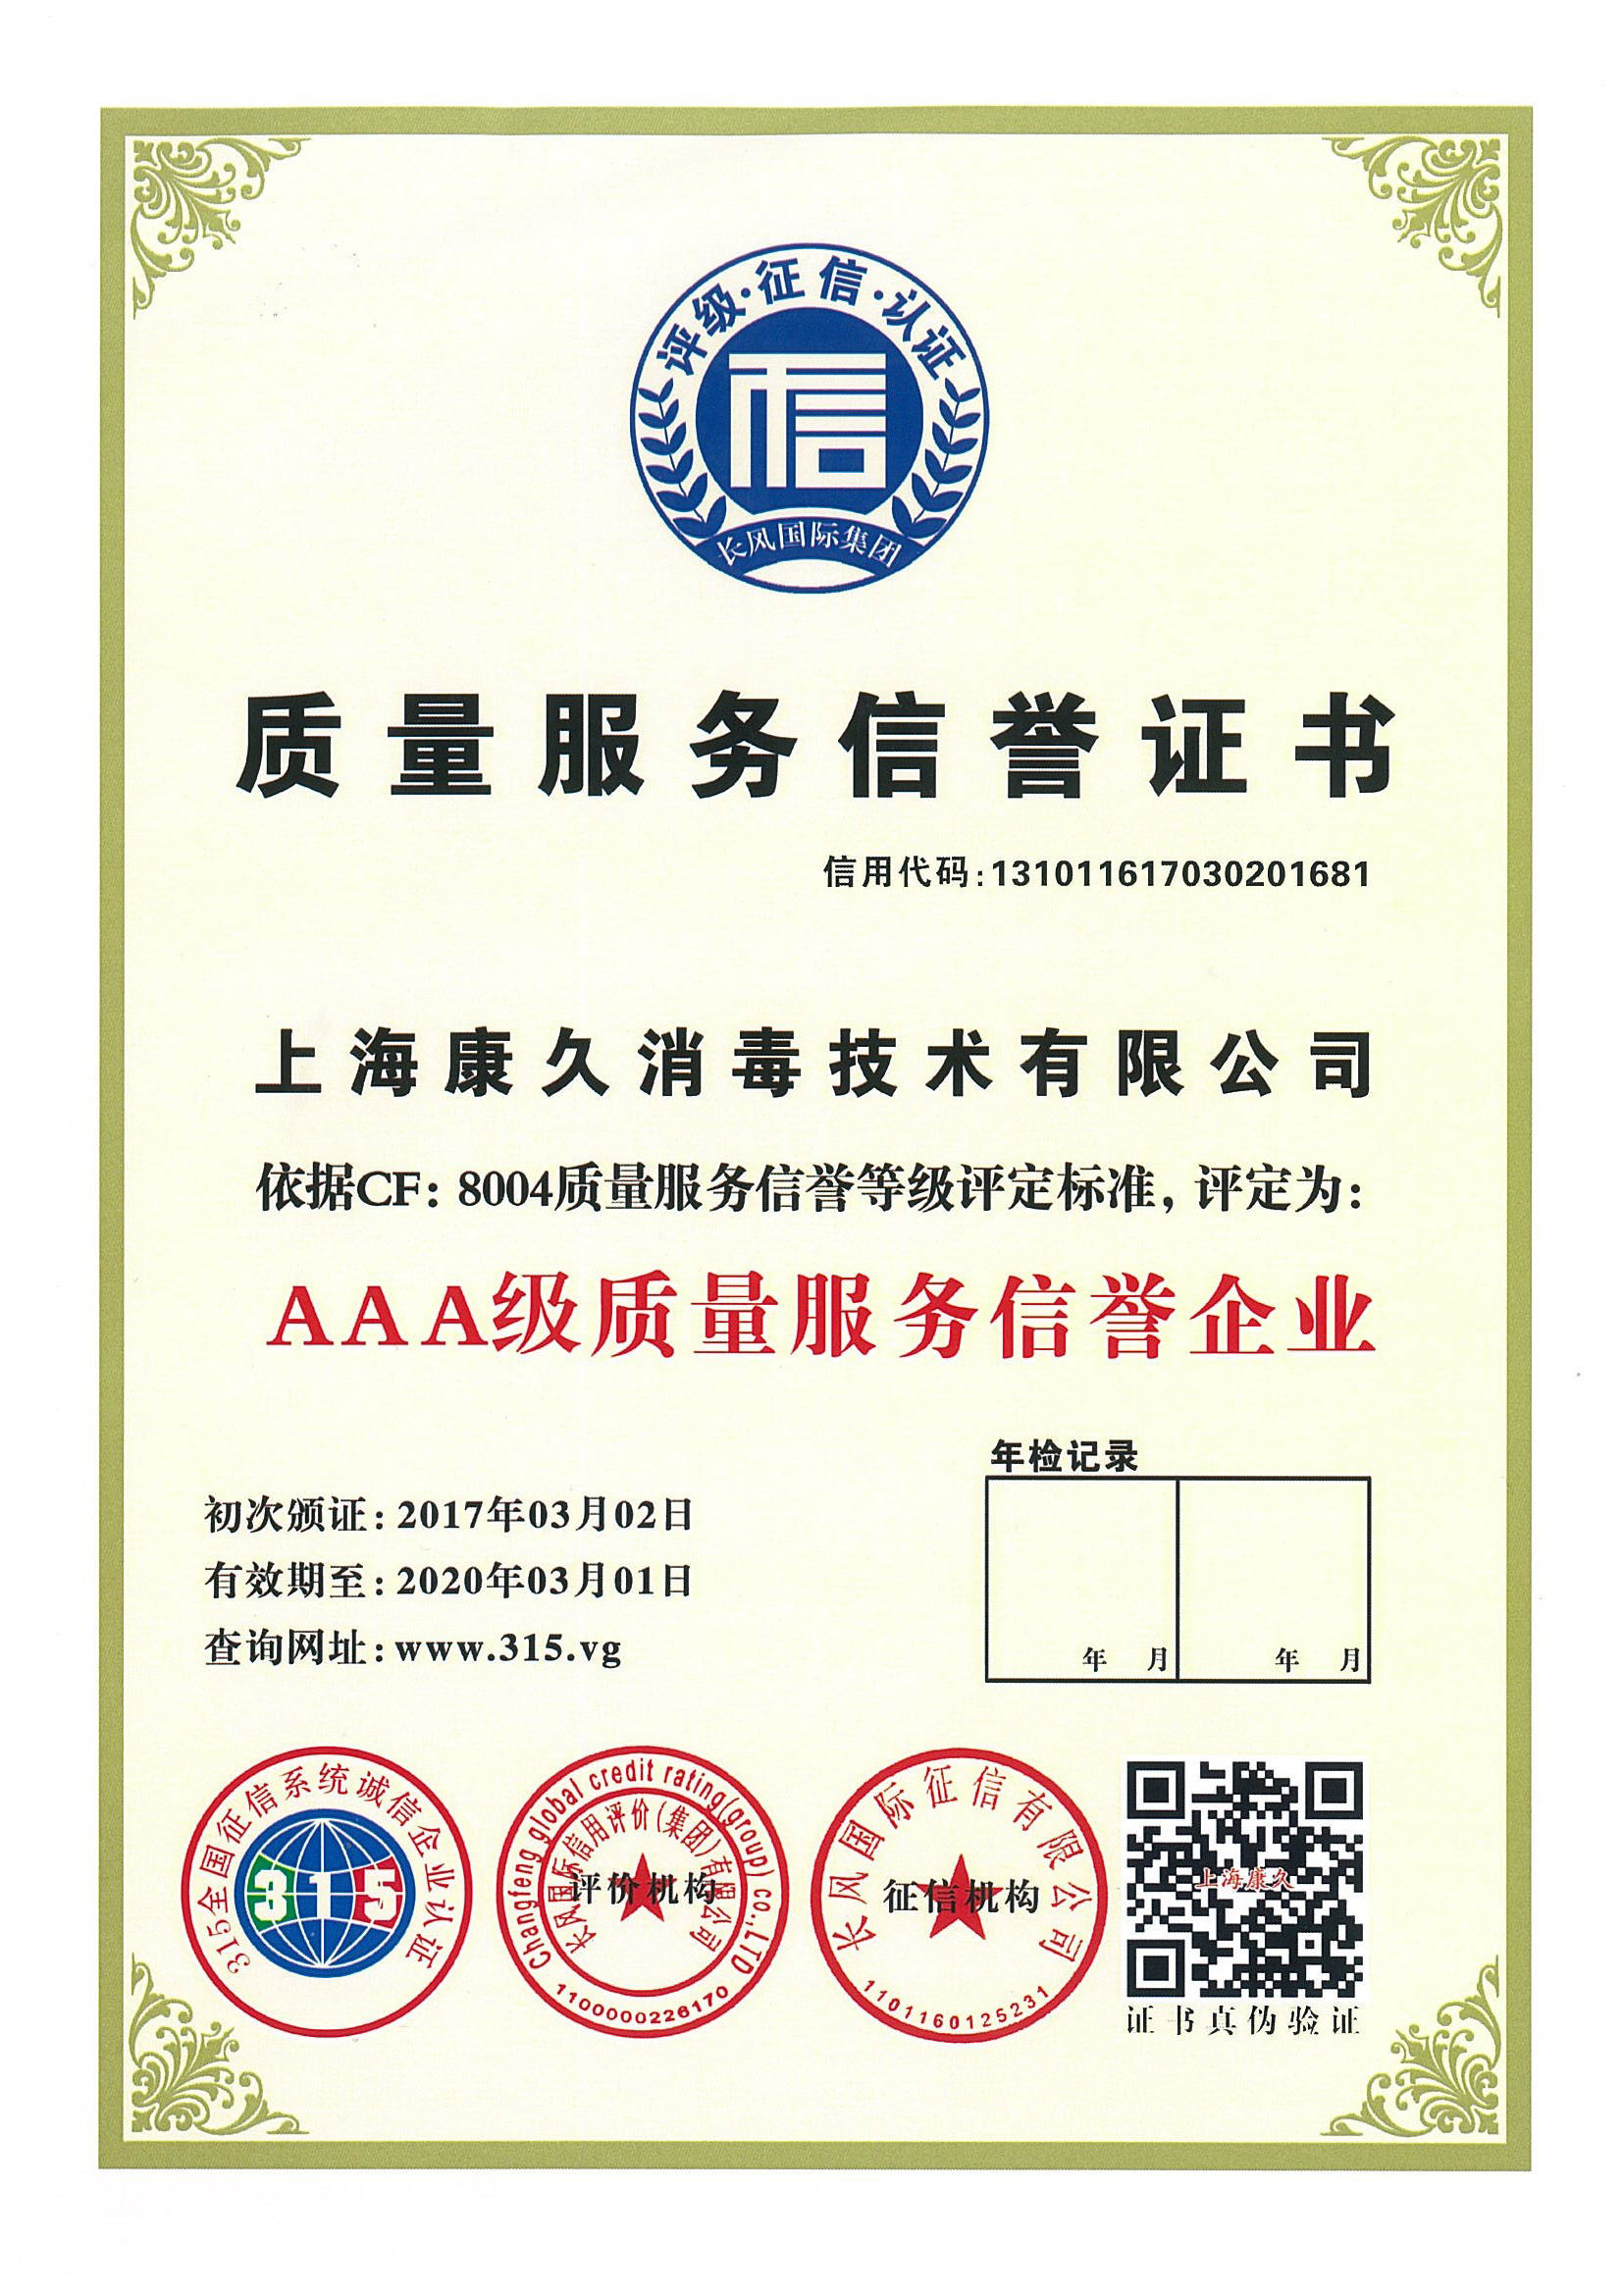 “泰州质量服务信誉证书